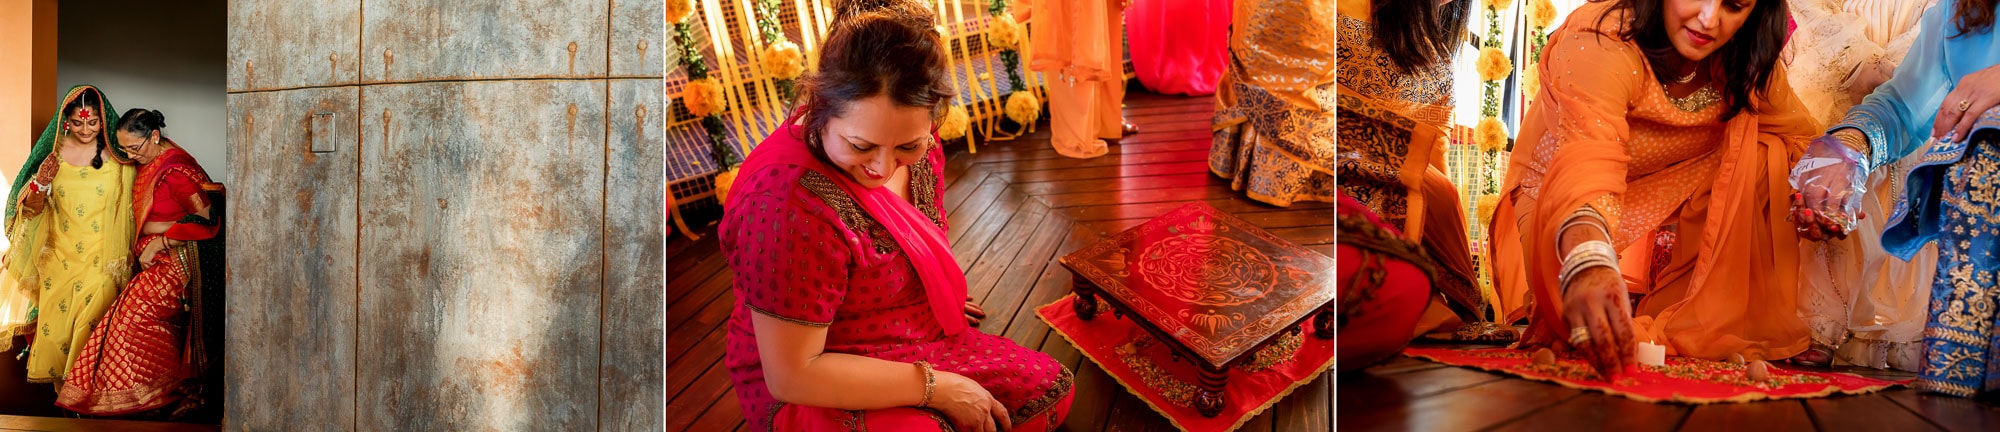 Pithi ceremony preparations